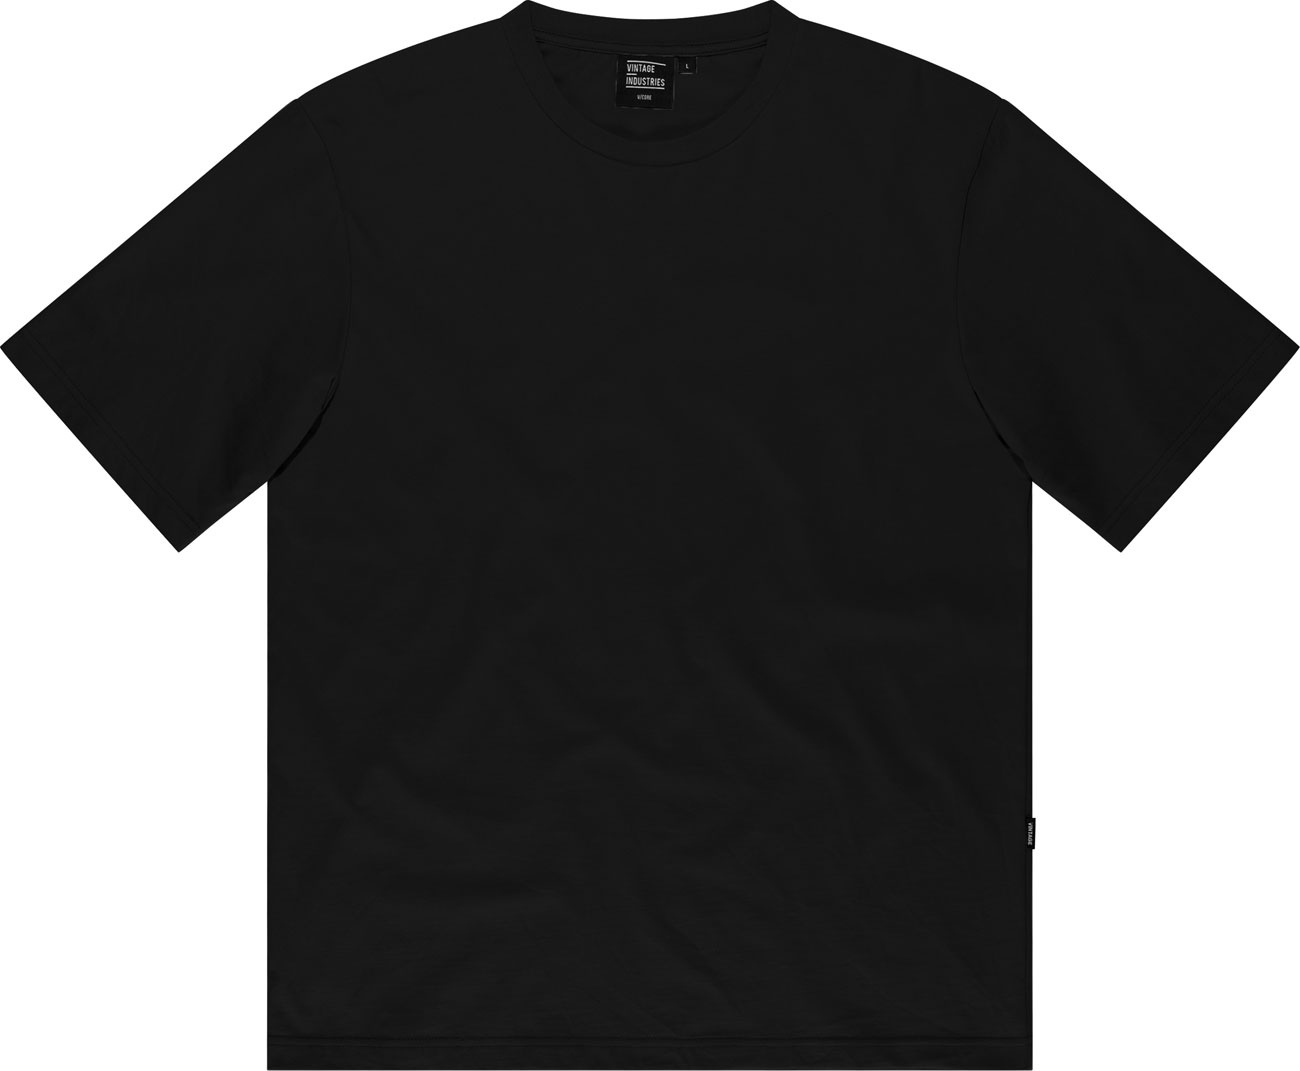 Vintage Industries Lex, t-shirt - Noir - XL